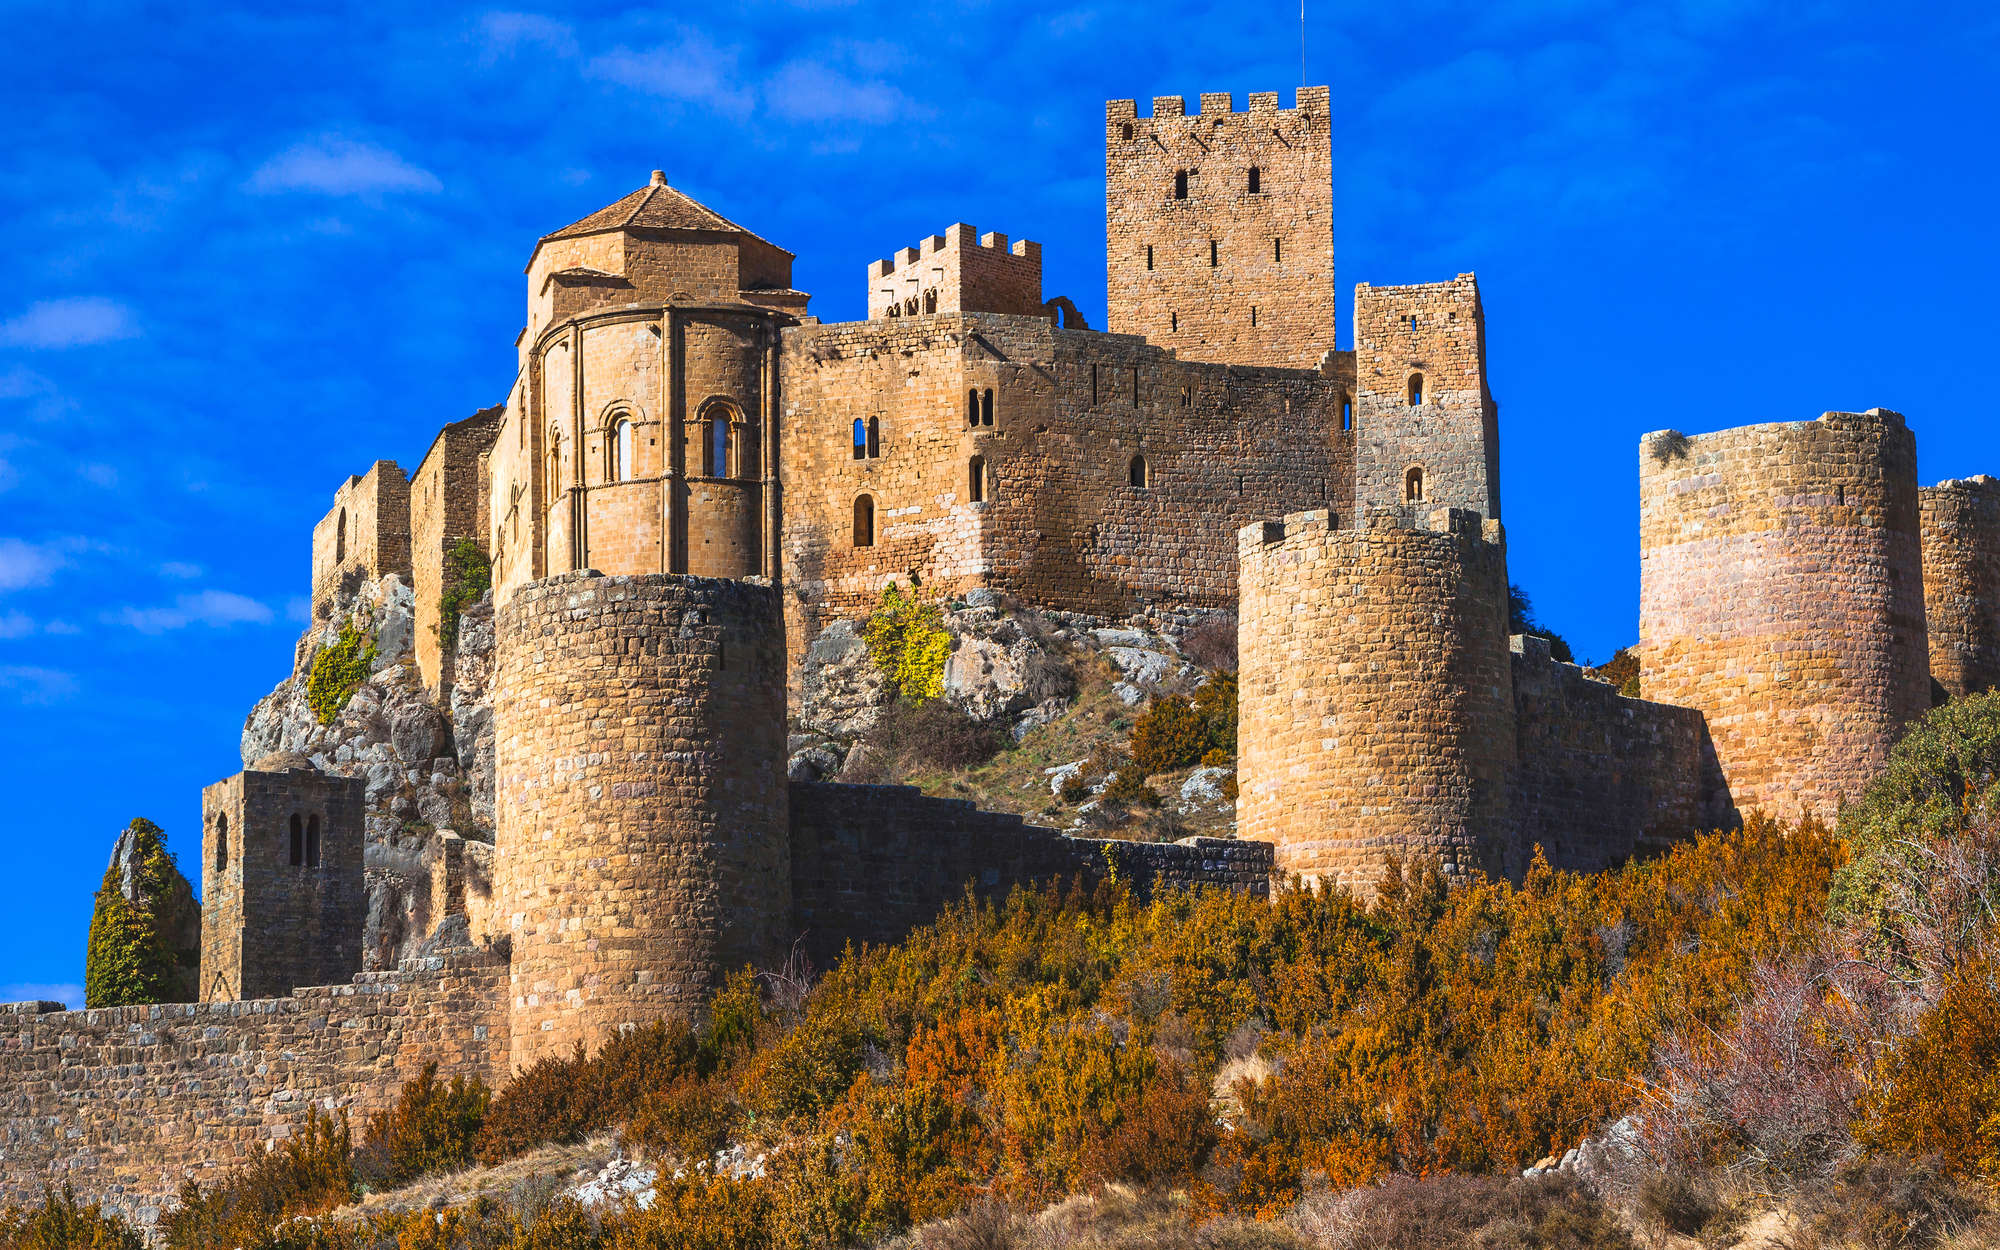             Digital behang Oud kasteel met stenen muur - Premium glad vlies
        